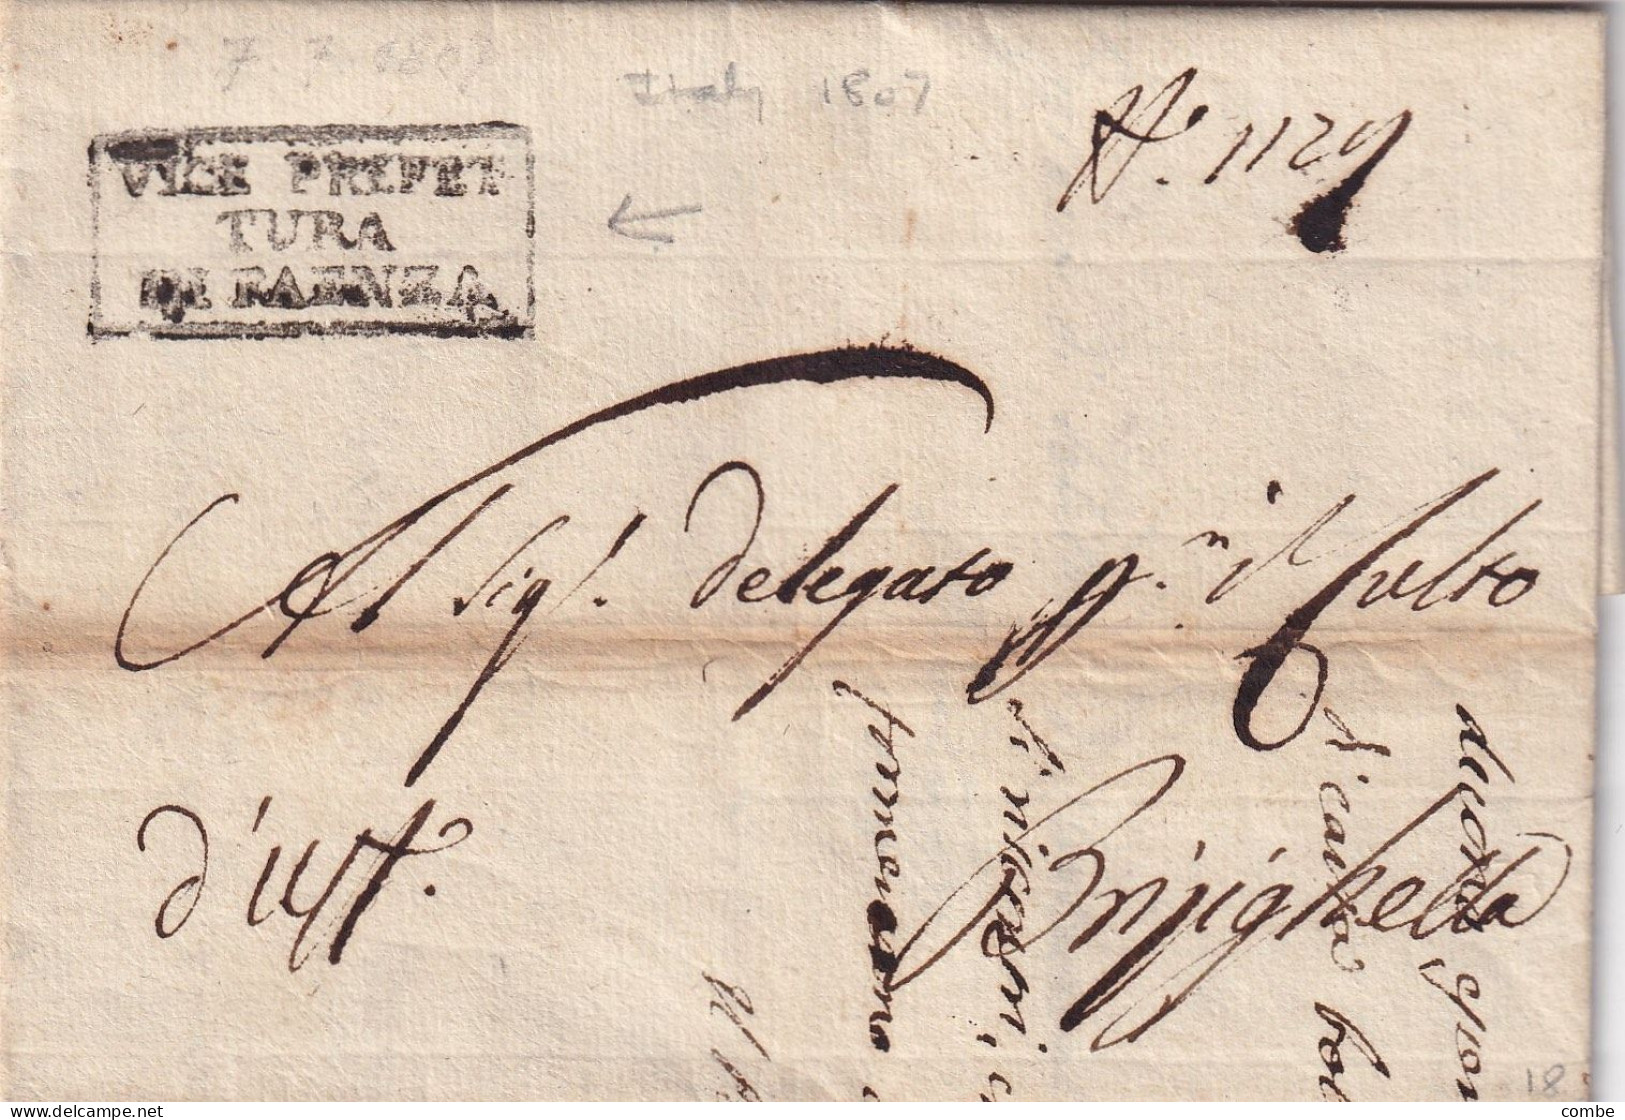 LETTERA ITALIA. 7 LUGLIO 1807. VICE PREFET/TURA/DE FAENZA. CARLO MANTEGAZZA. DEPARTIMENTO DEL RUBICONE. REGNO - ...-1850 Préphilatélie